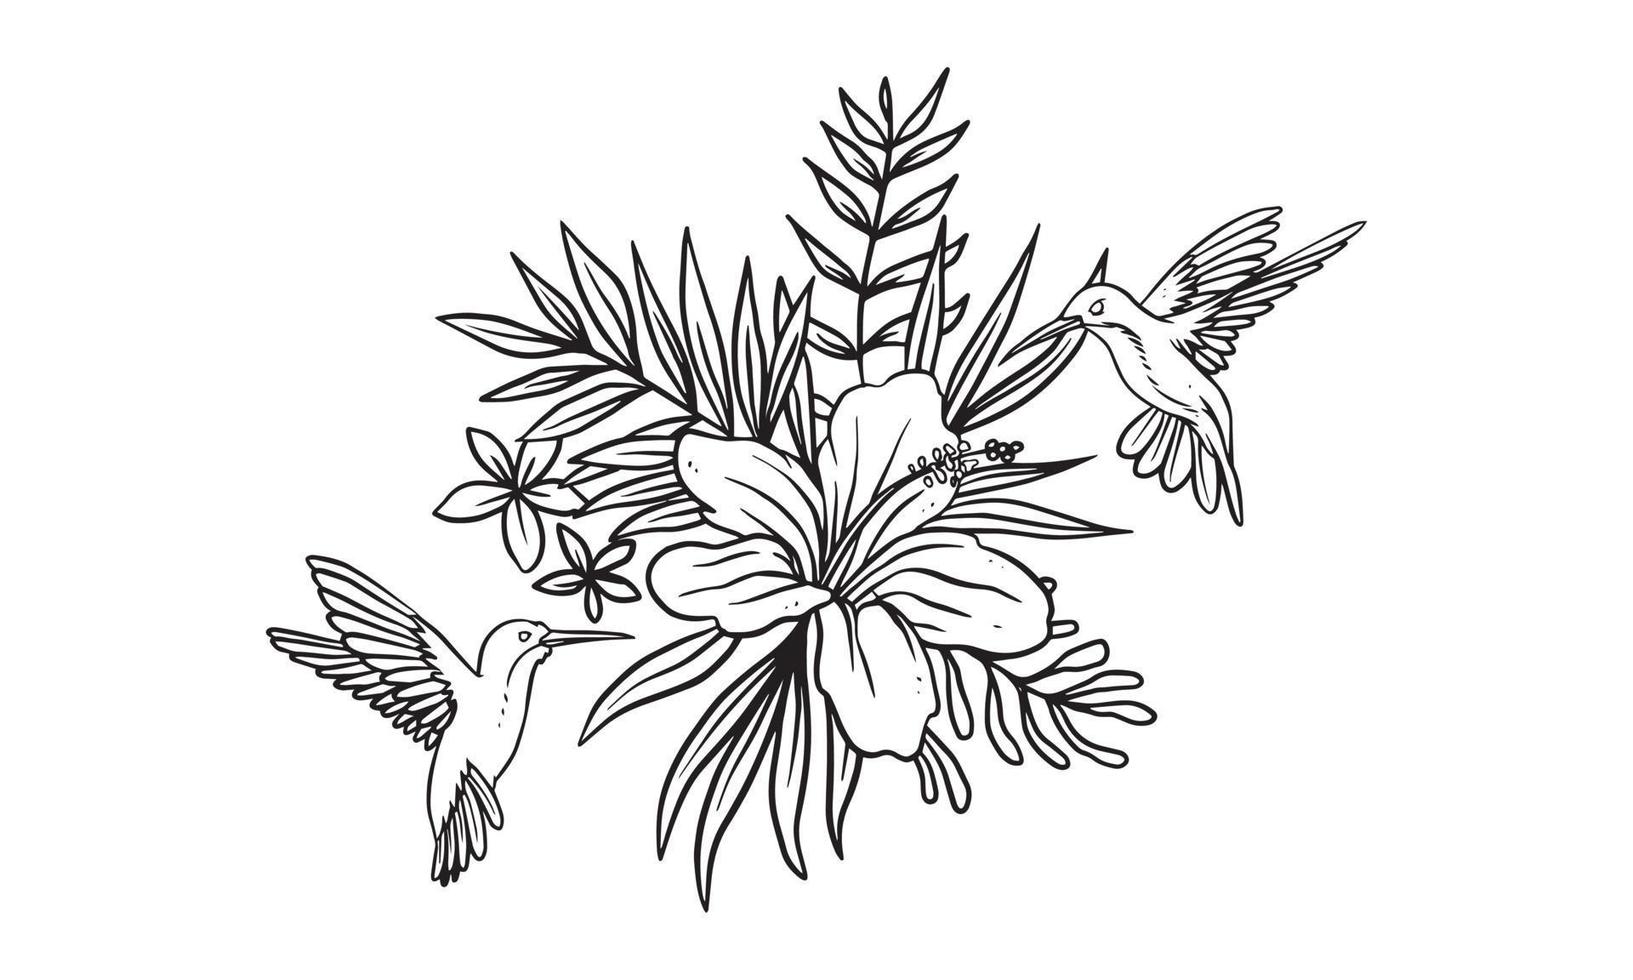 corona con pájaro comiendo miel, vector dibujado a mano ilustración